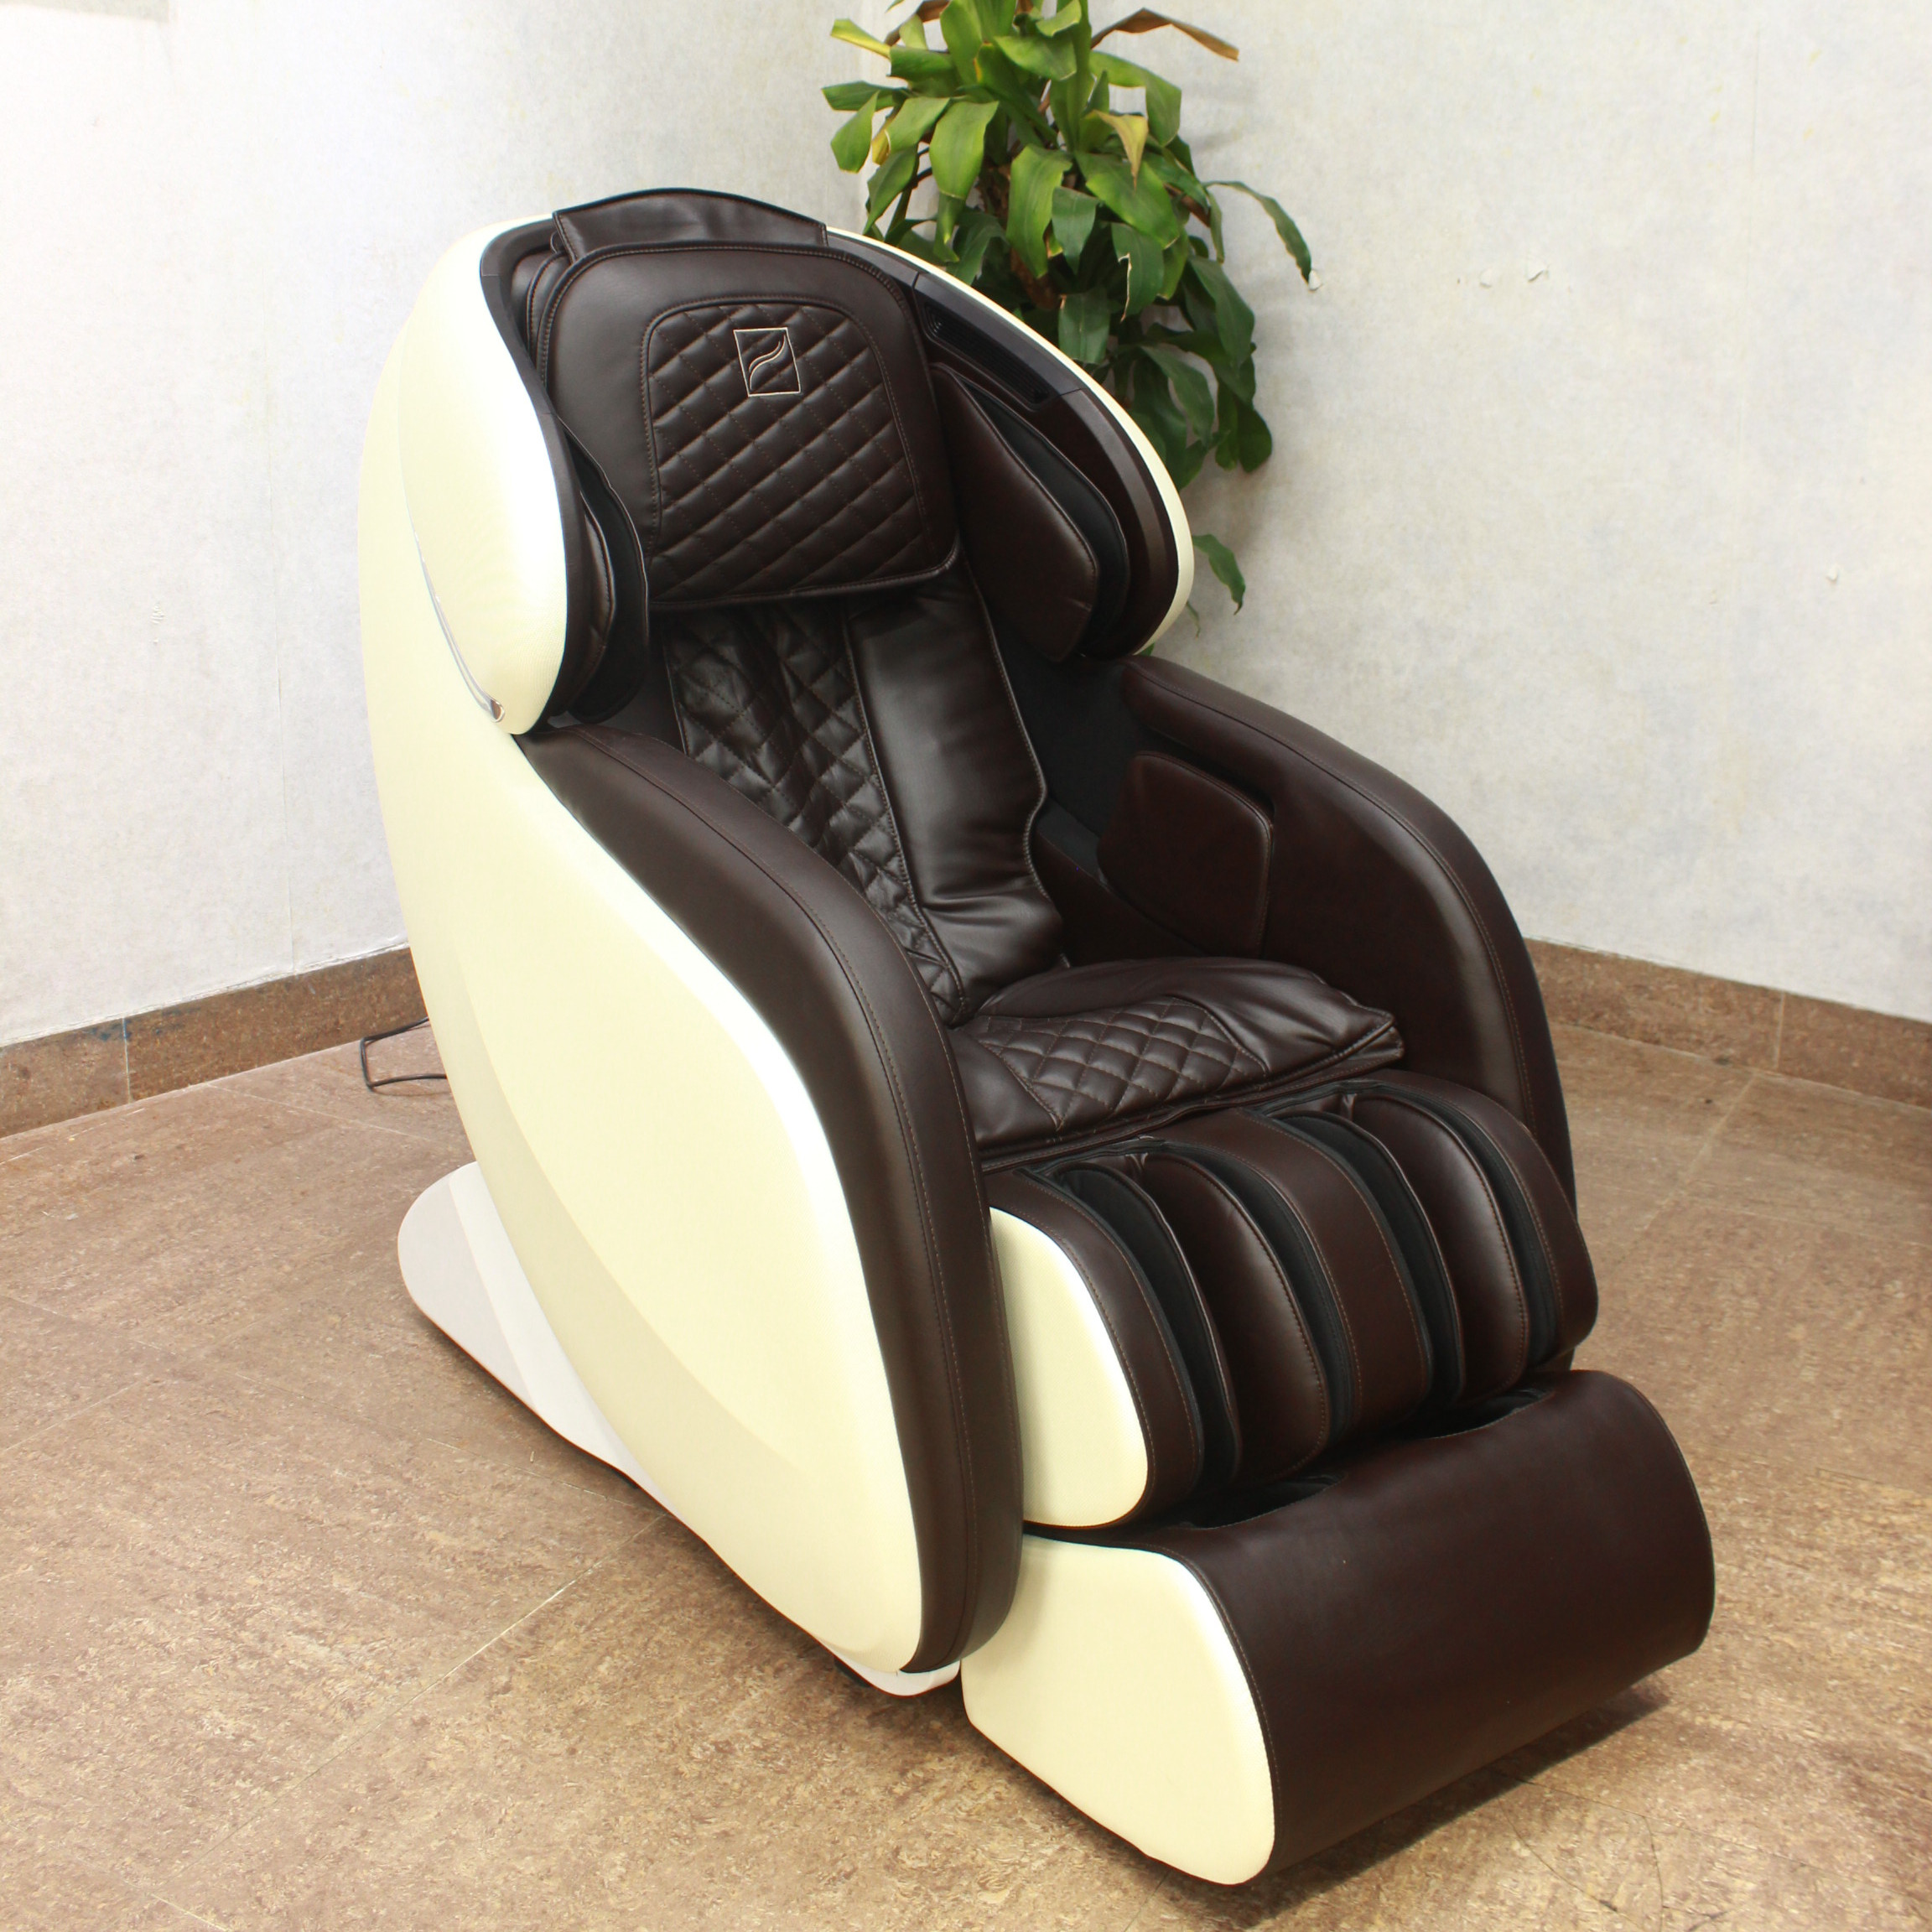 Ghế massage toàn thân Okasa OS-868 - Tặng kèm Xe đạp tập + Bạt phủ ghế + Bình sịt vệ sinh ghế + Thảm kê ghế